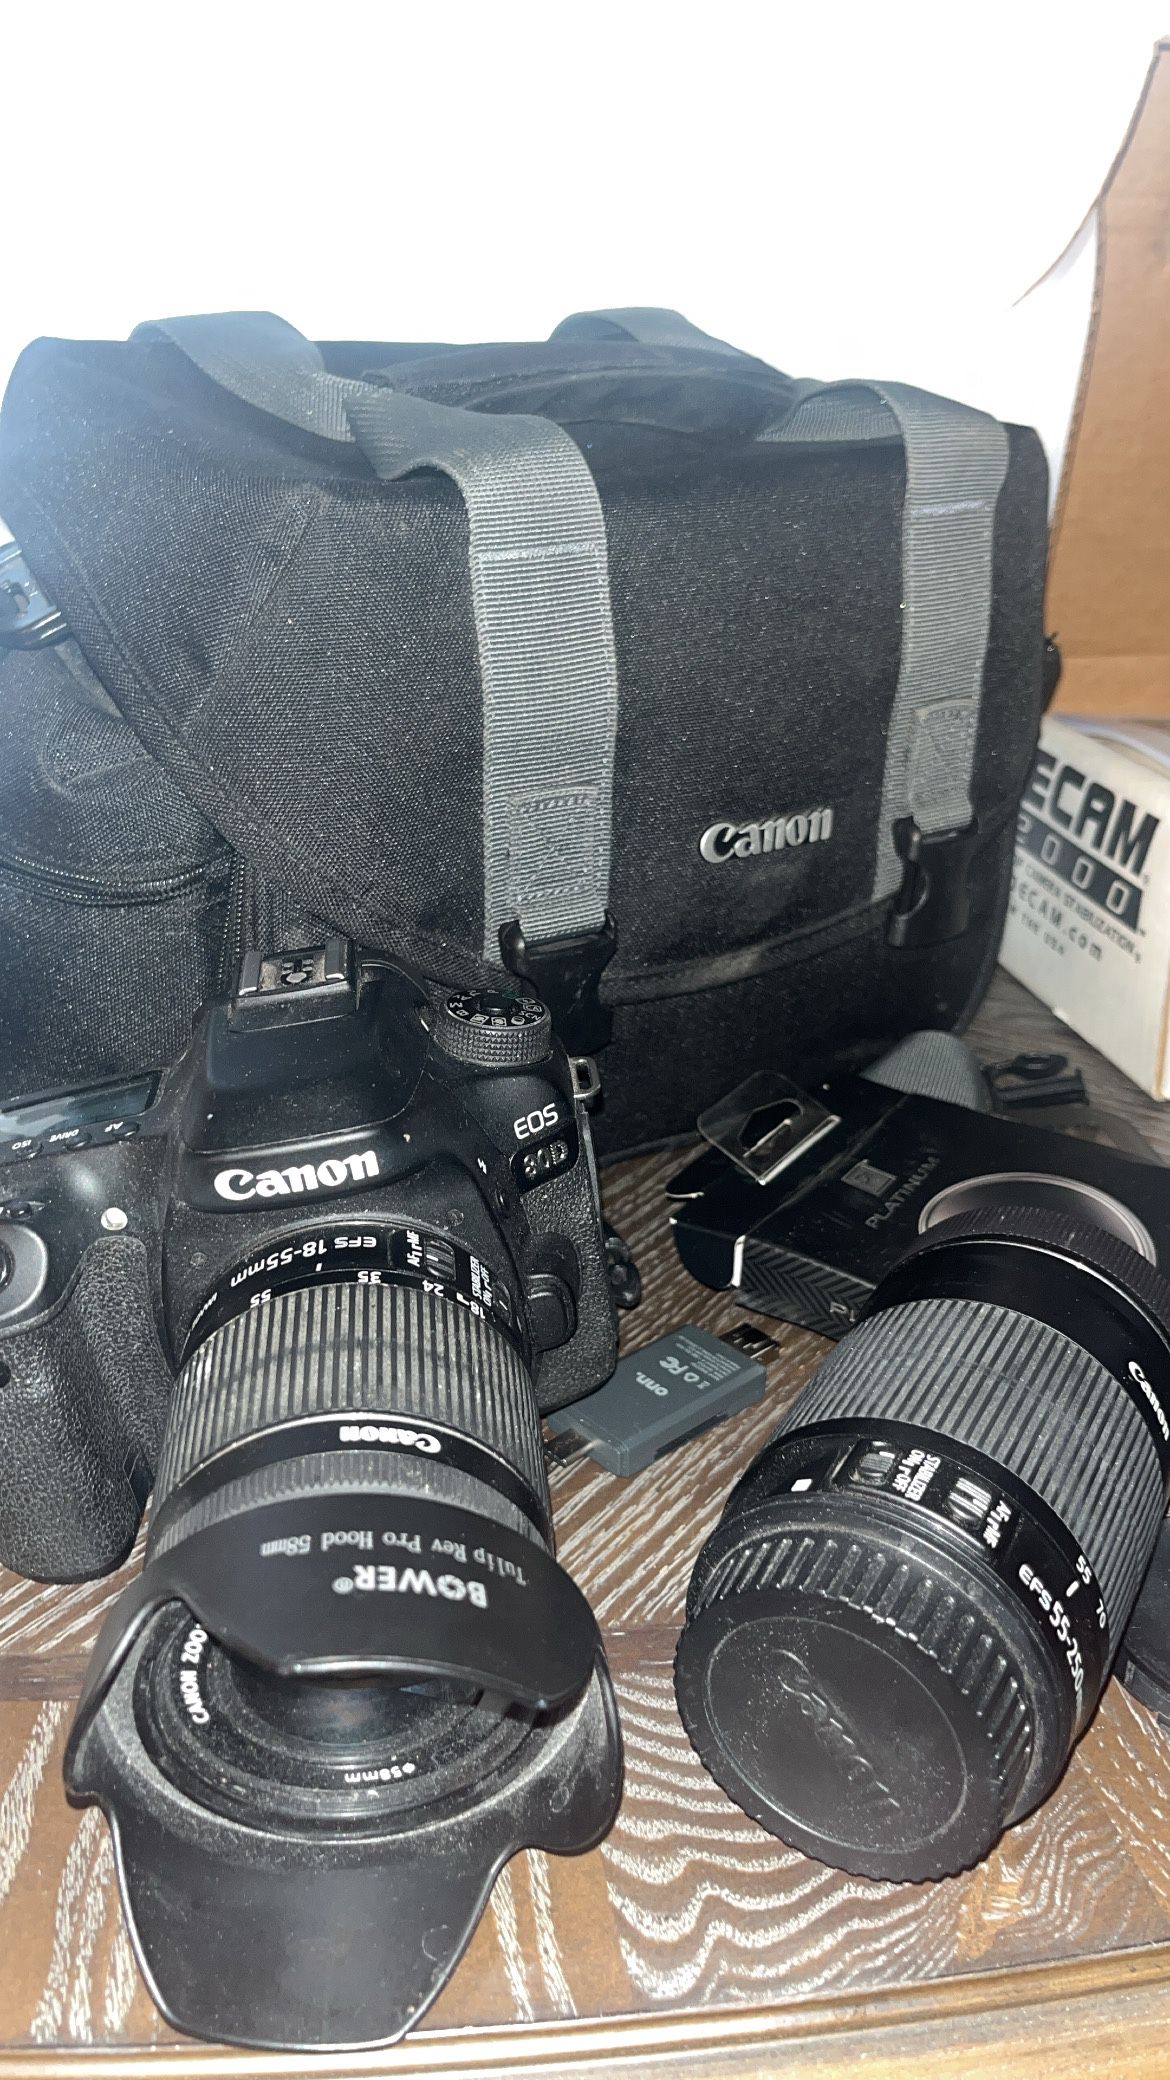 Canon Camera + Accessories 